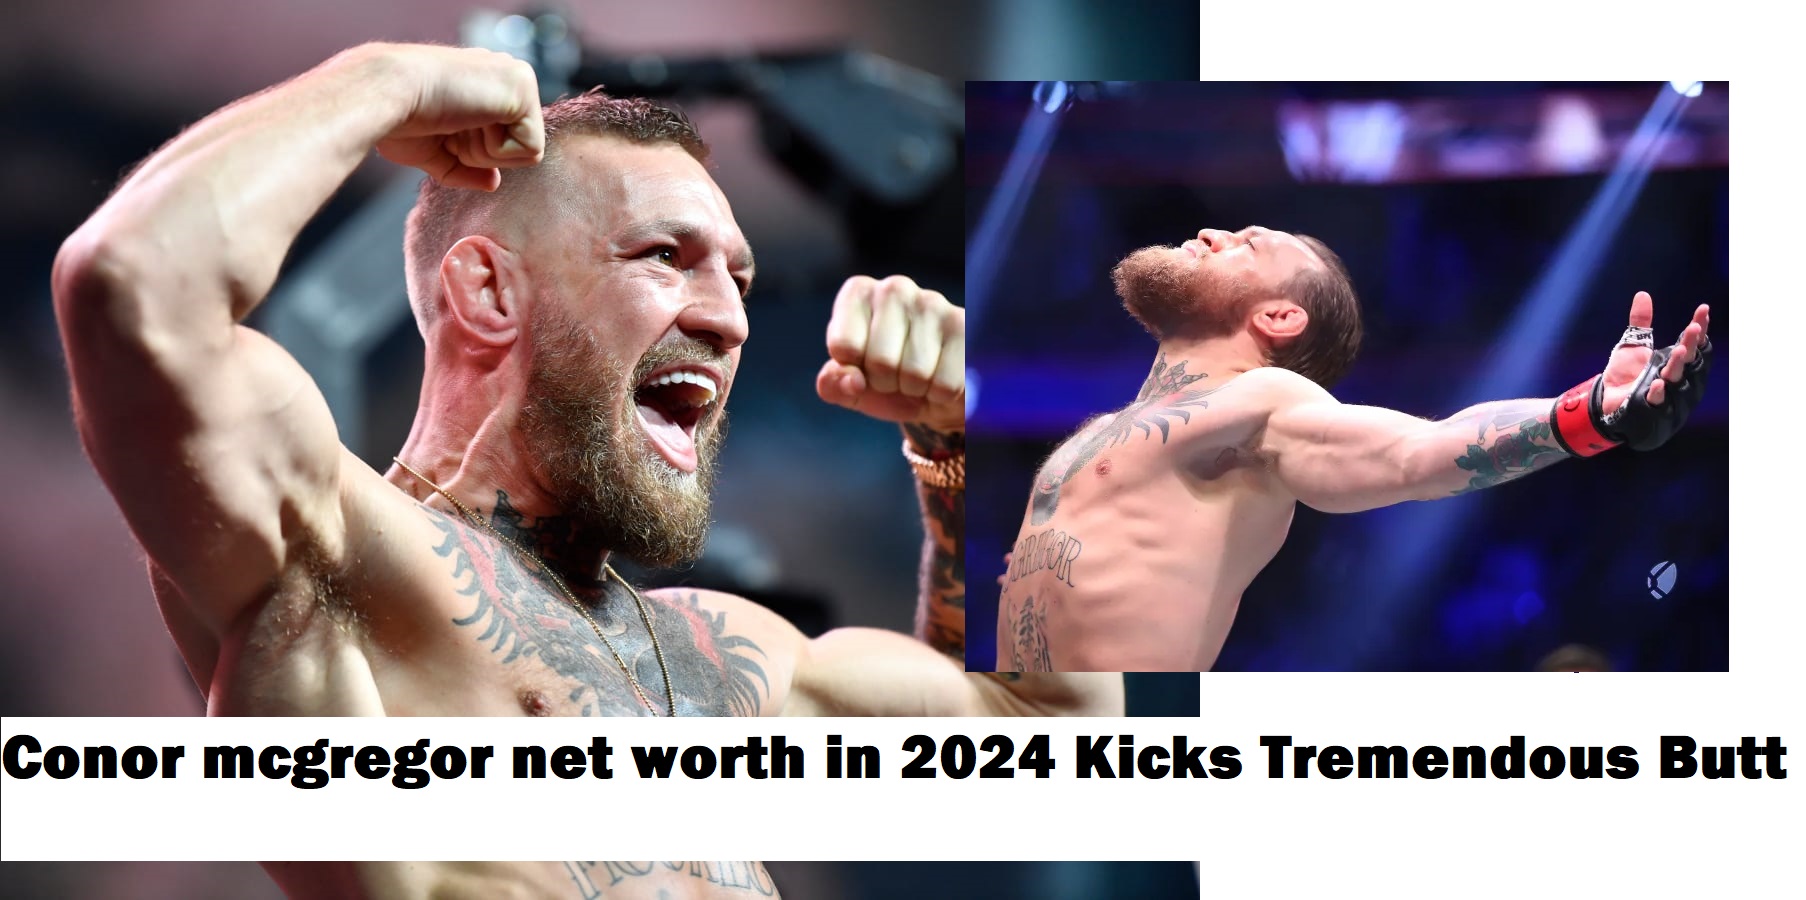 Conor mcgregor net worth in 2024 Kicks Tremendous Butt